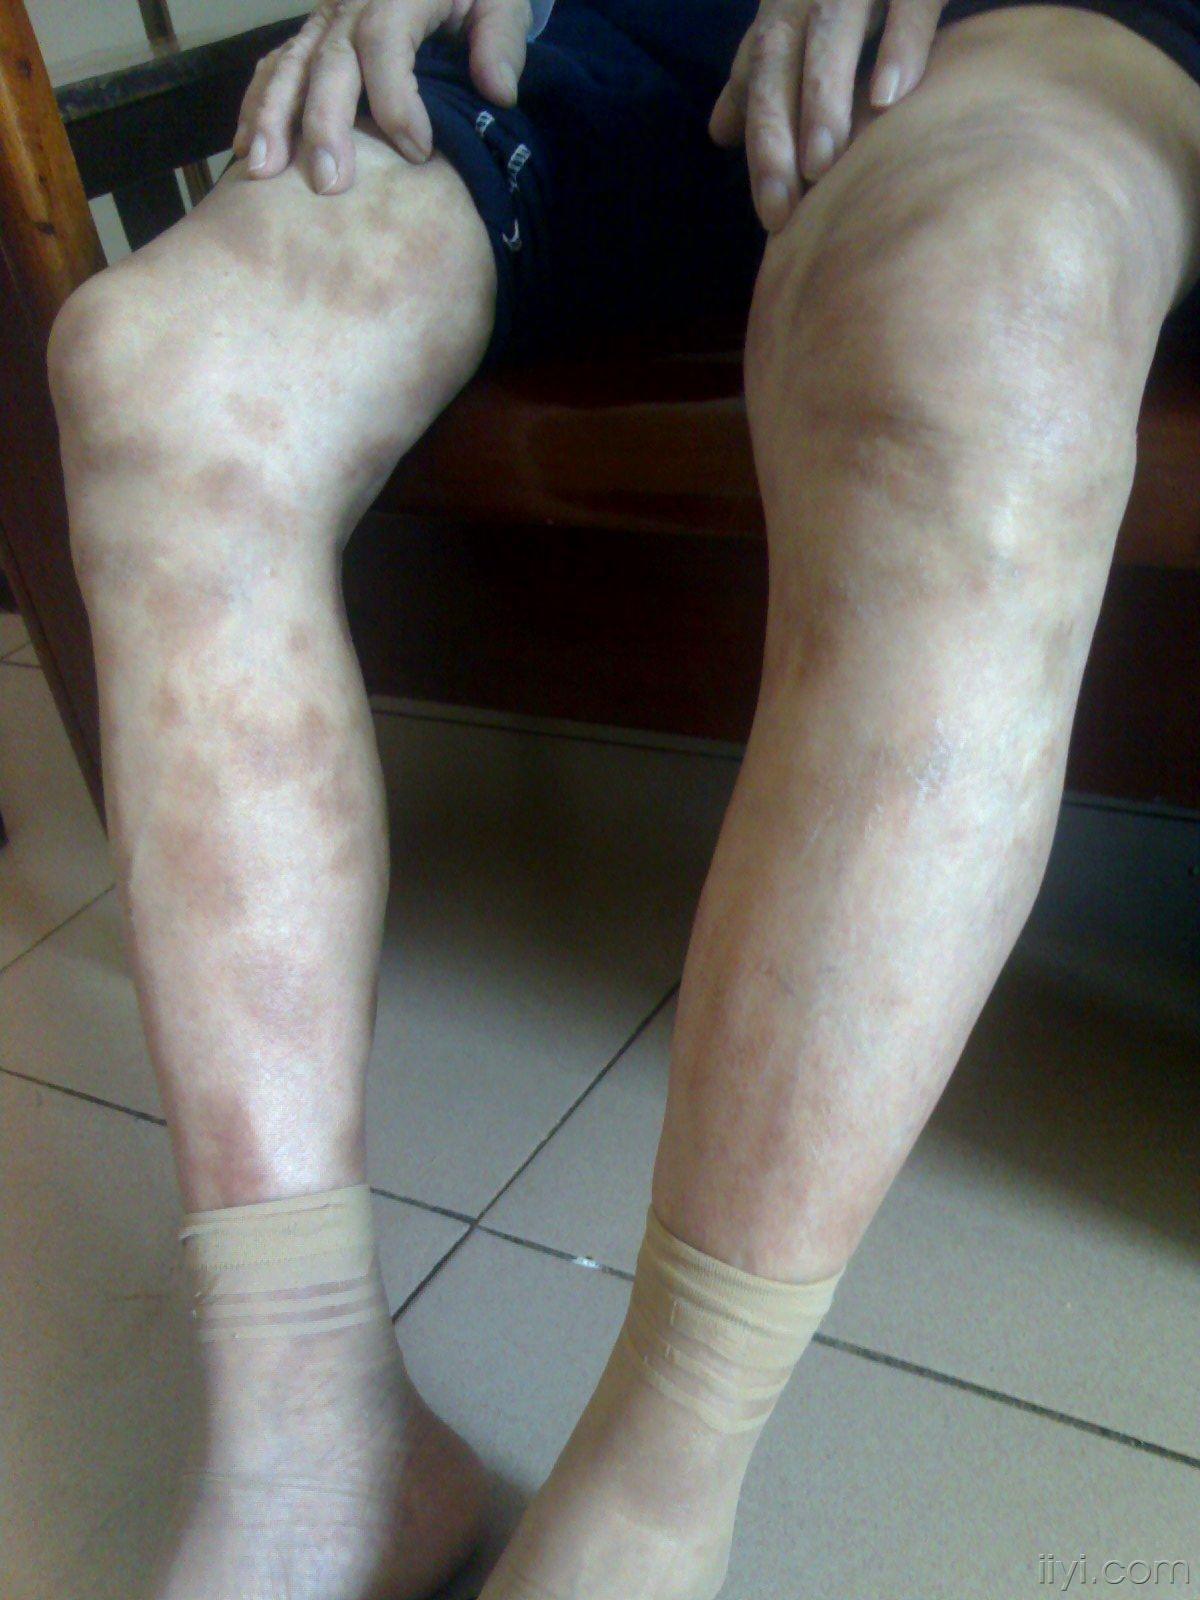 84岁女患者双下肢大量斑疹皮肤病达美康药物的不良反应